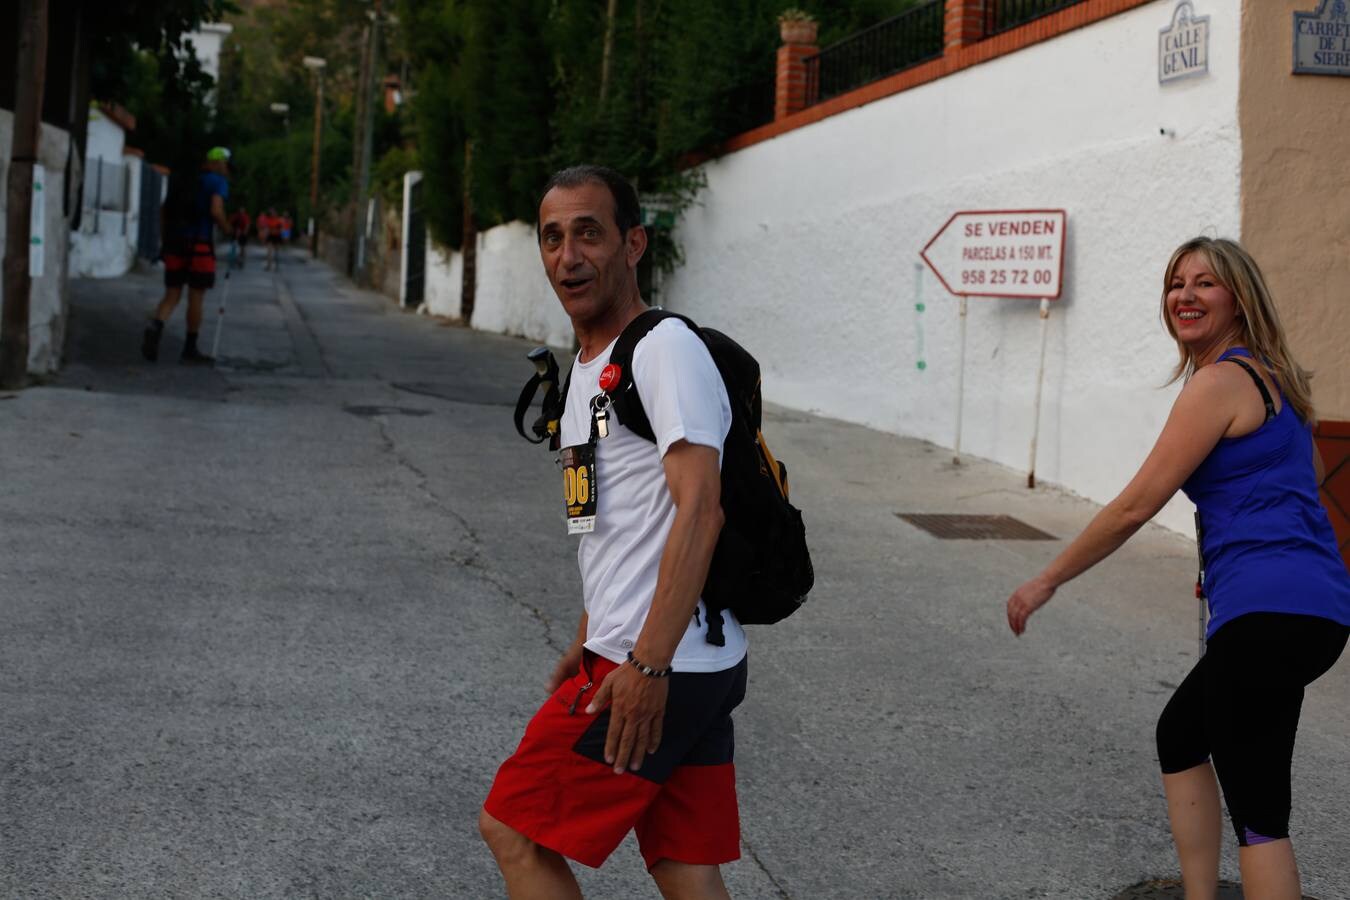 Mientras muchos granadinos pasaban el fin de semana en la playa, en la capital se celebró la III Carrera Nocturna de la Alhambra, parte de la Copa Andaluza de Marcha Nórdica, con cerca de 300 participantes sumando sus tres modalidades